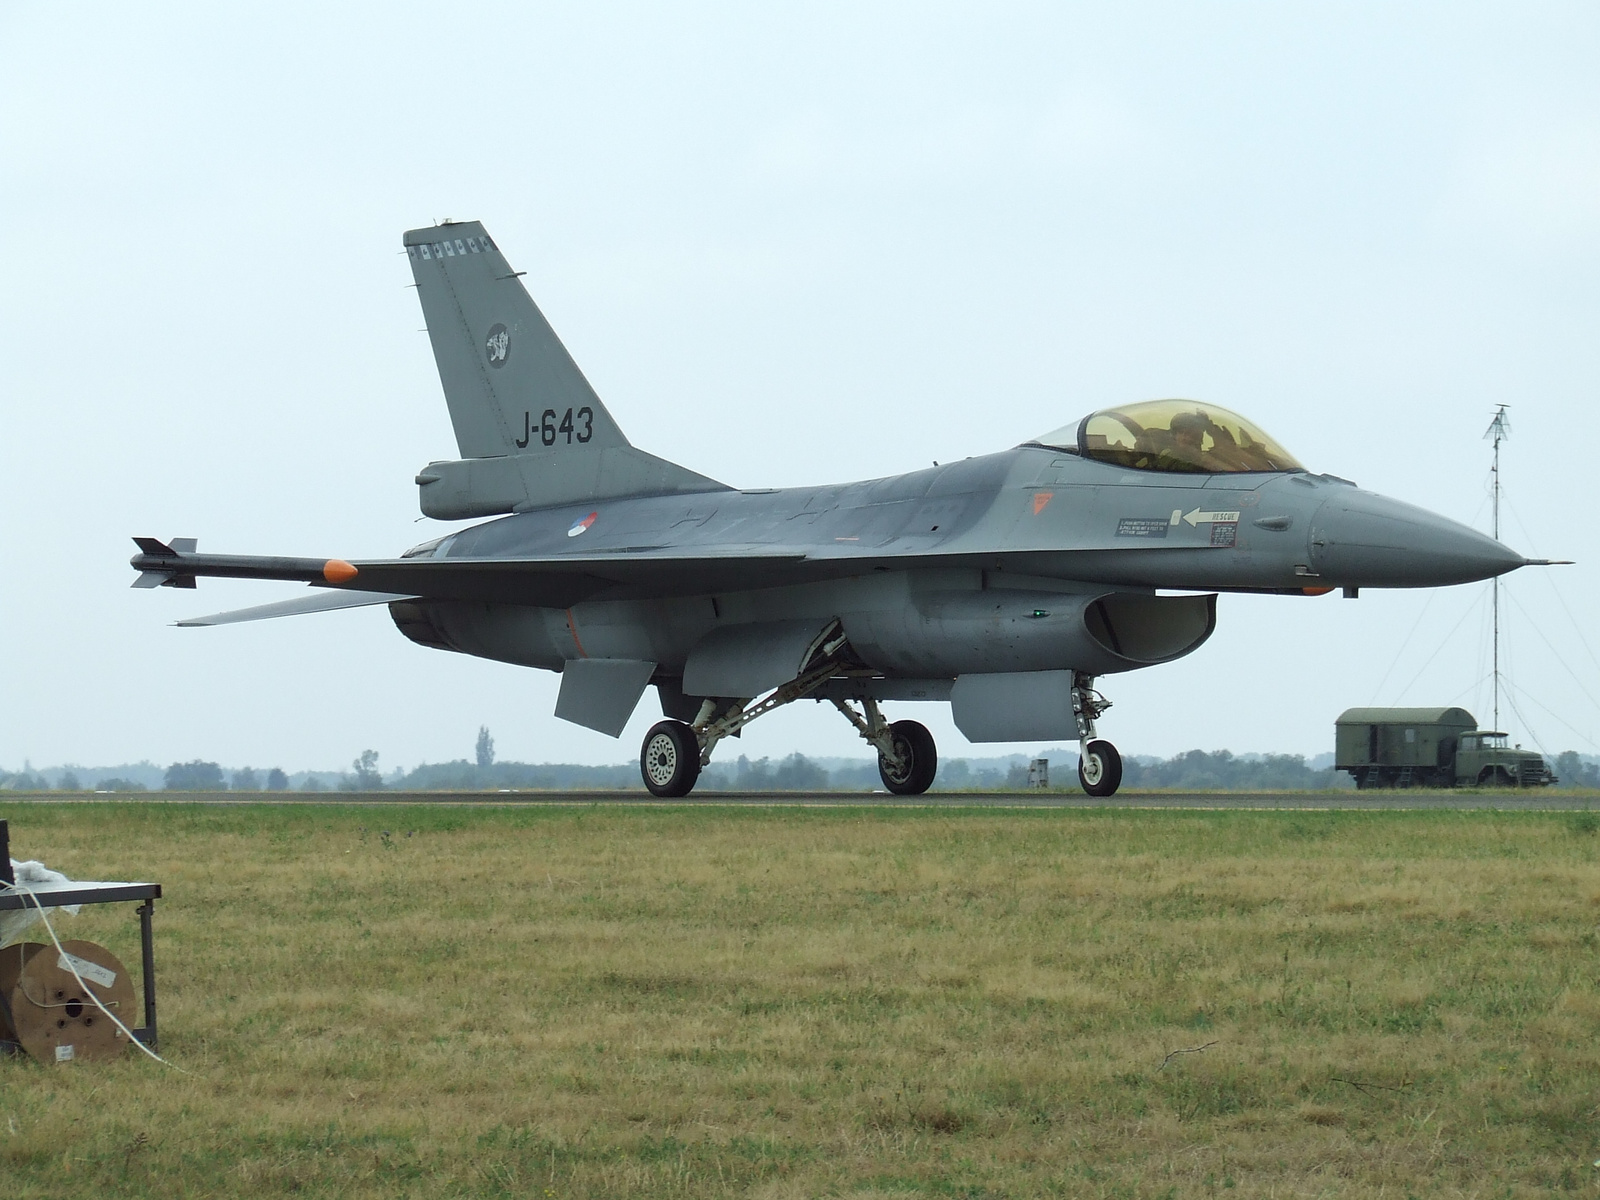 F-16 (Hollandia) V